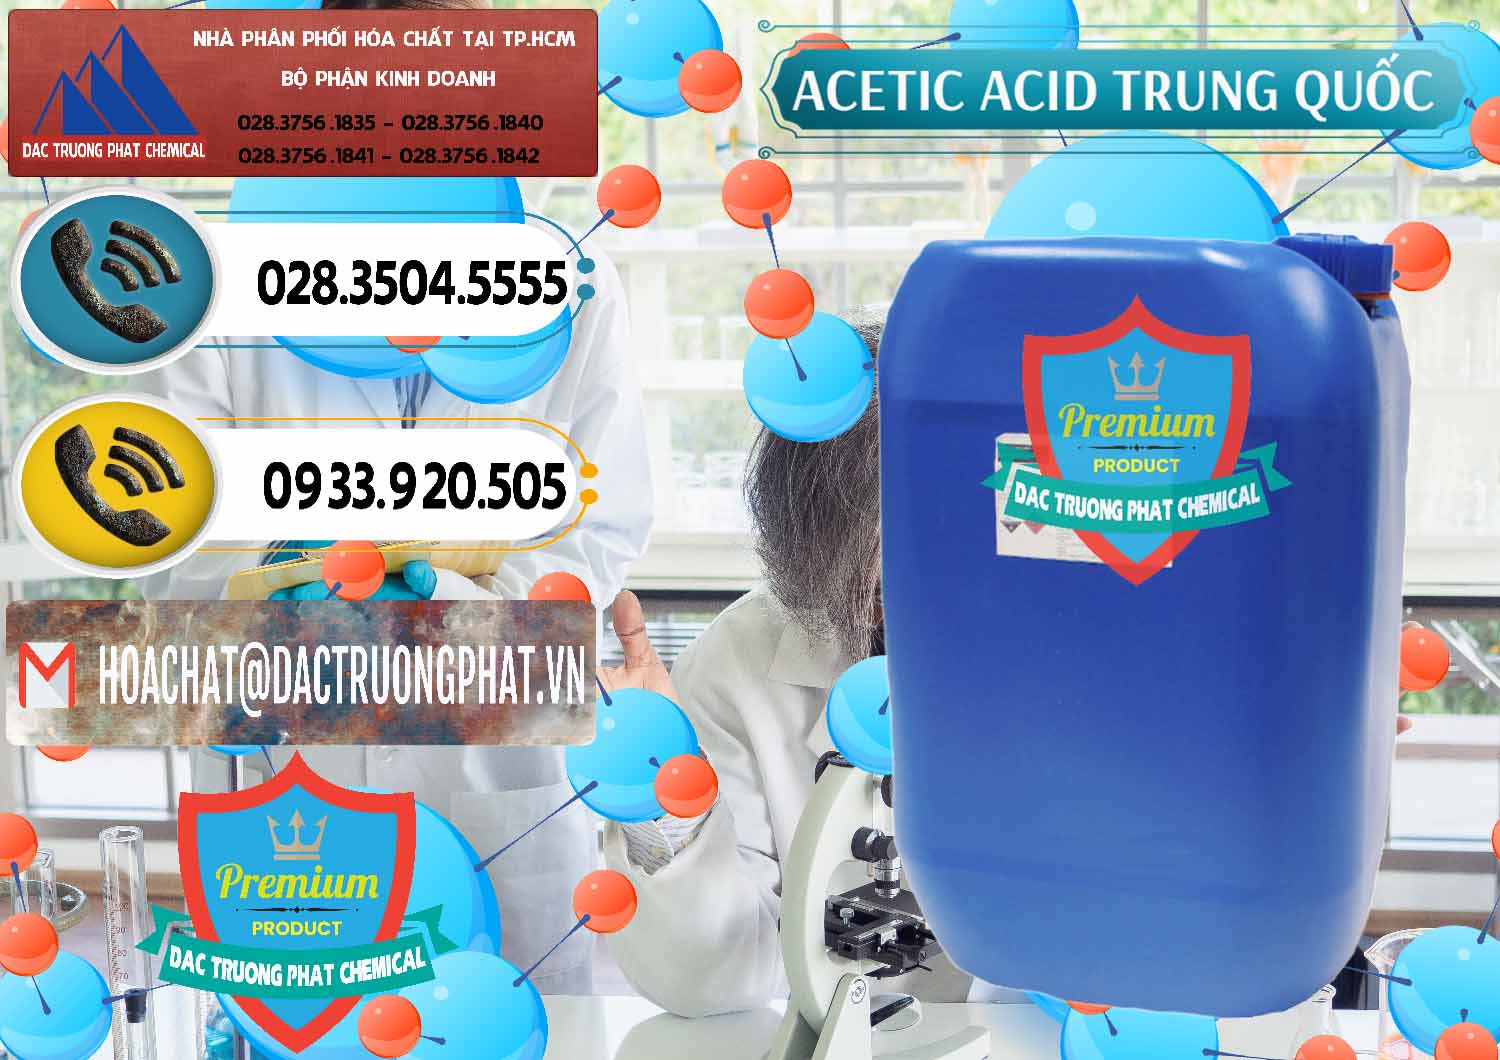 Nơi cung cấp & bán Acetic Acid – Axit Acetic Trung Quốc China - 0358 - Chuyên cung ứng ( phân phối ) hóa chất tại TP.HCM - hoachatdetnhuom.vn